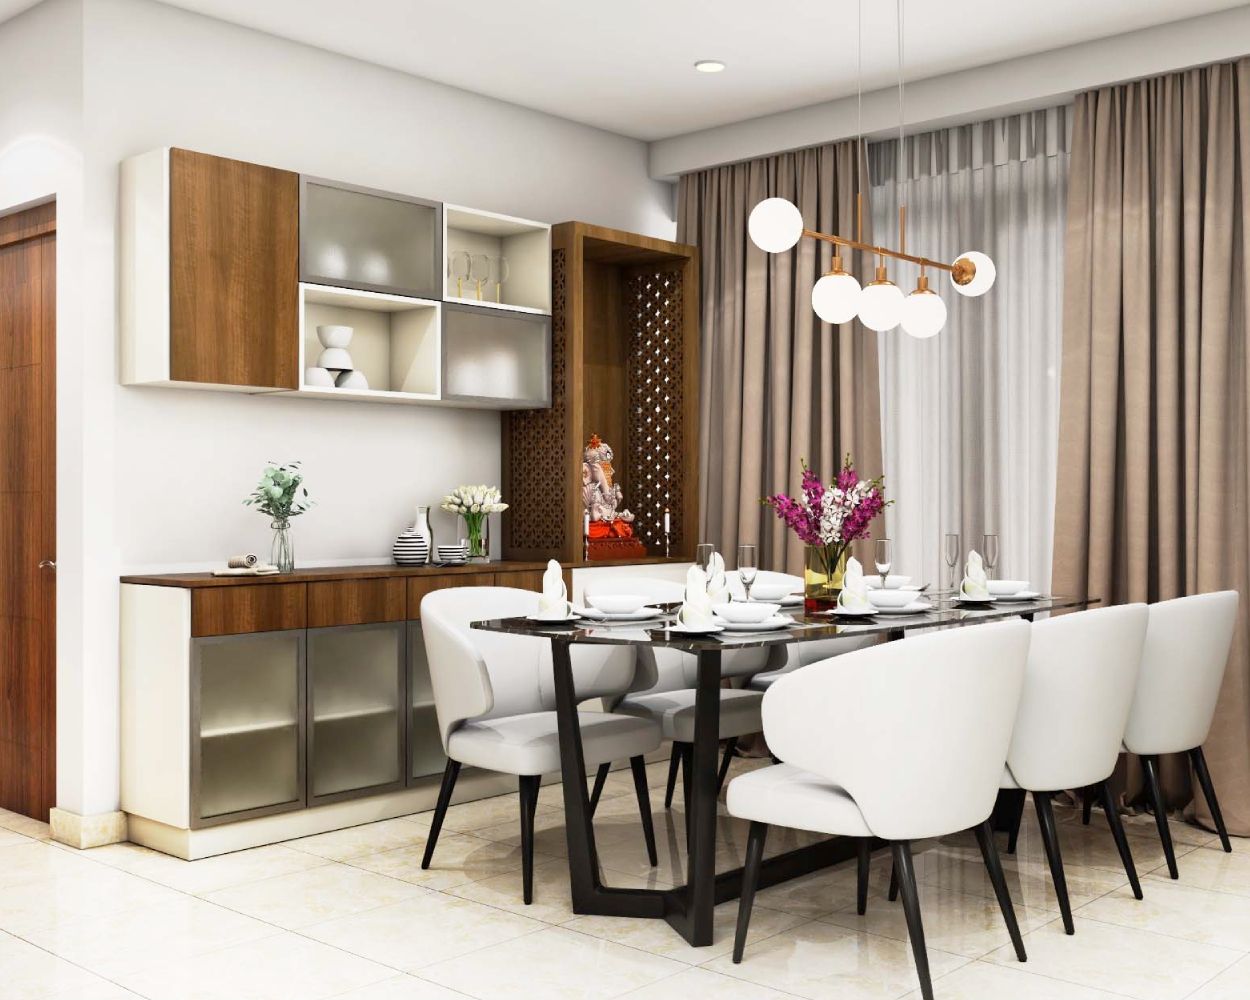 Dining Room Interior Design & Decor - Livspace